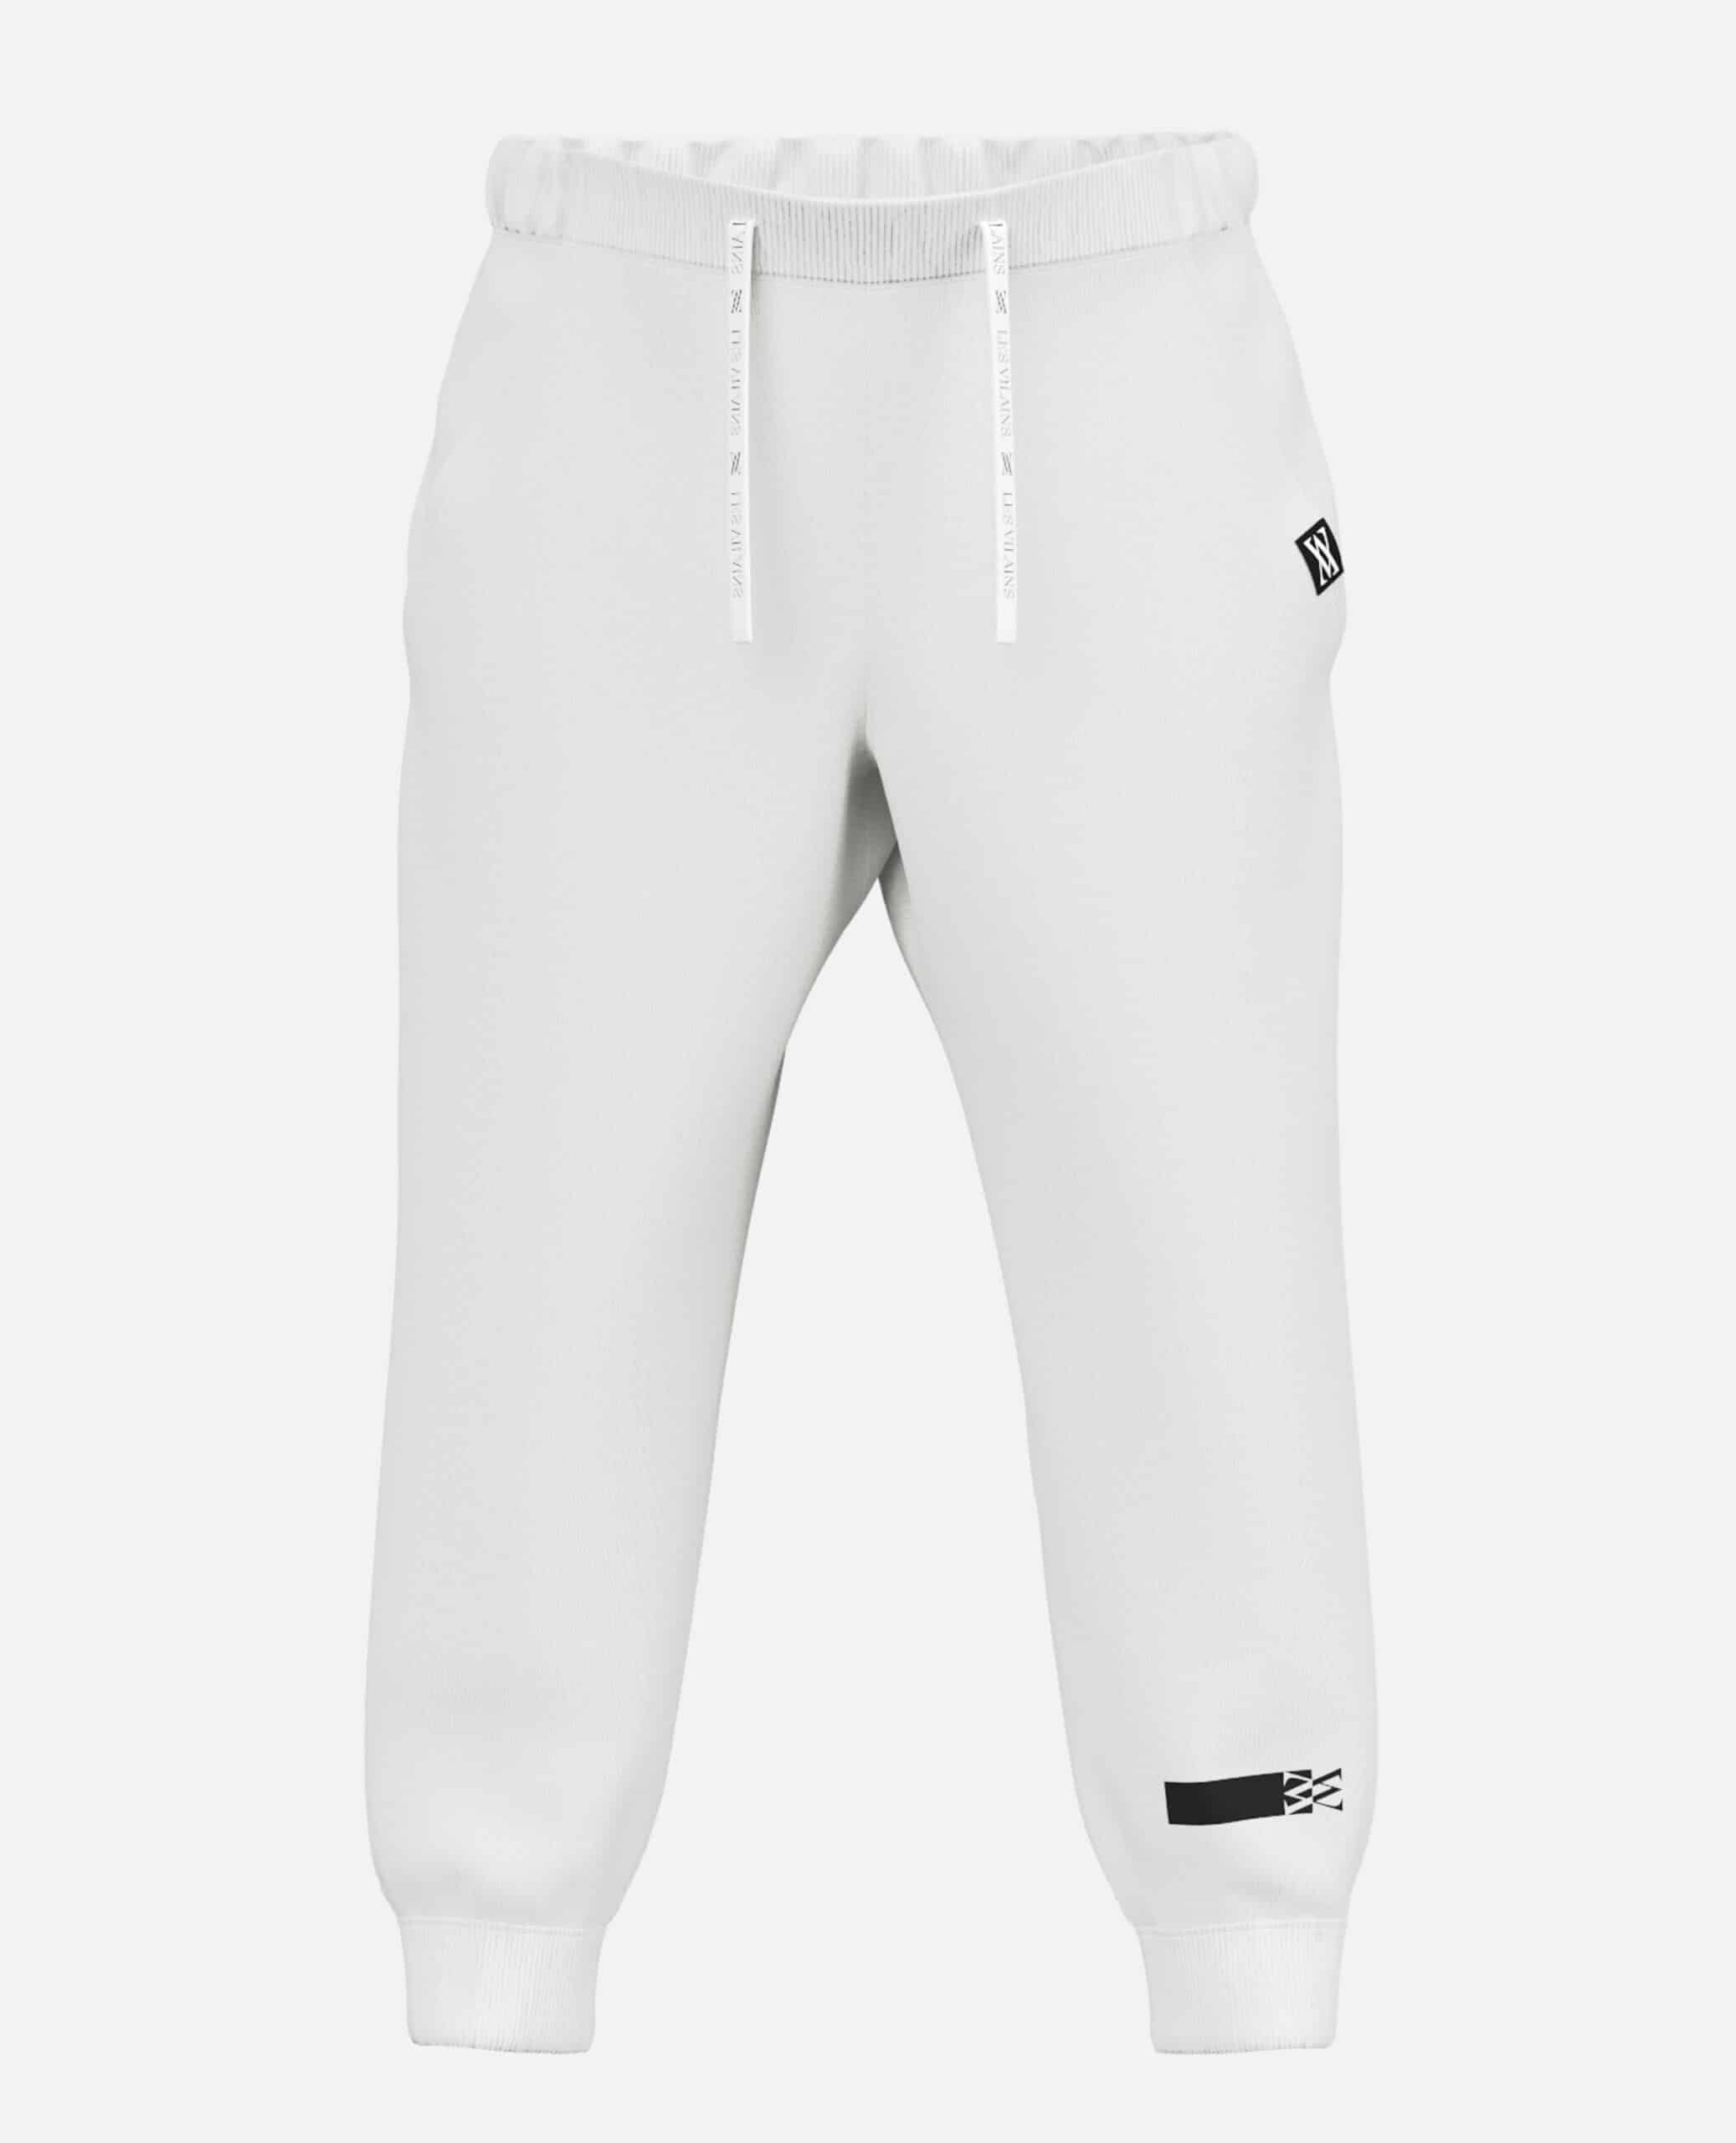 Les Vilains Original Streetwear sweatpants white front